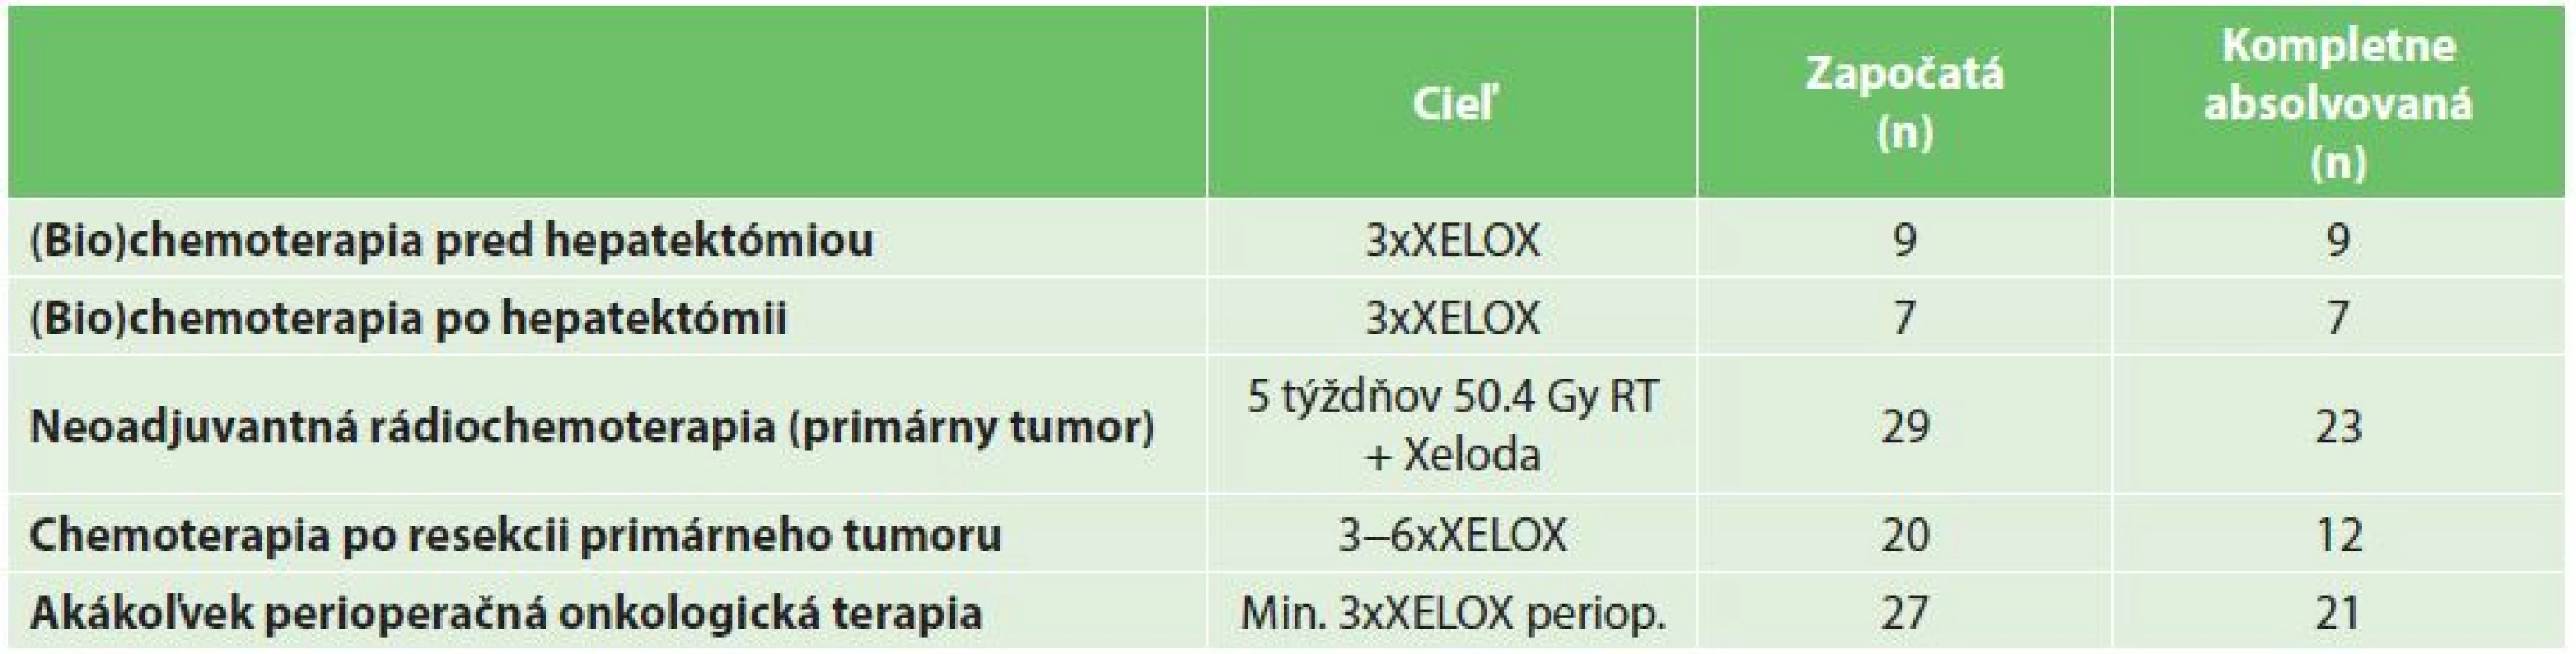 Perioperačná a adjuvantná onkologická liečba
Tab. 2: Perioperative and adjuvant (bio)chemotherapy